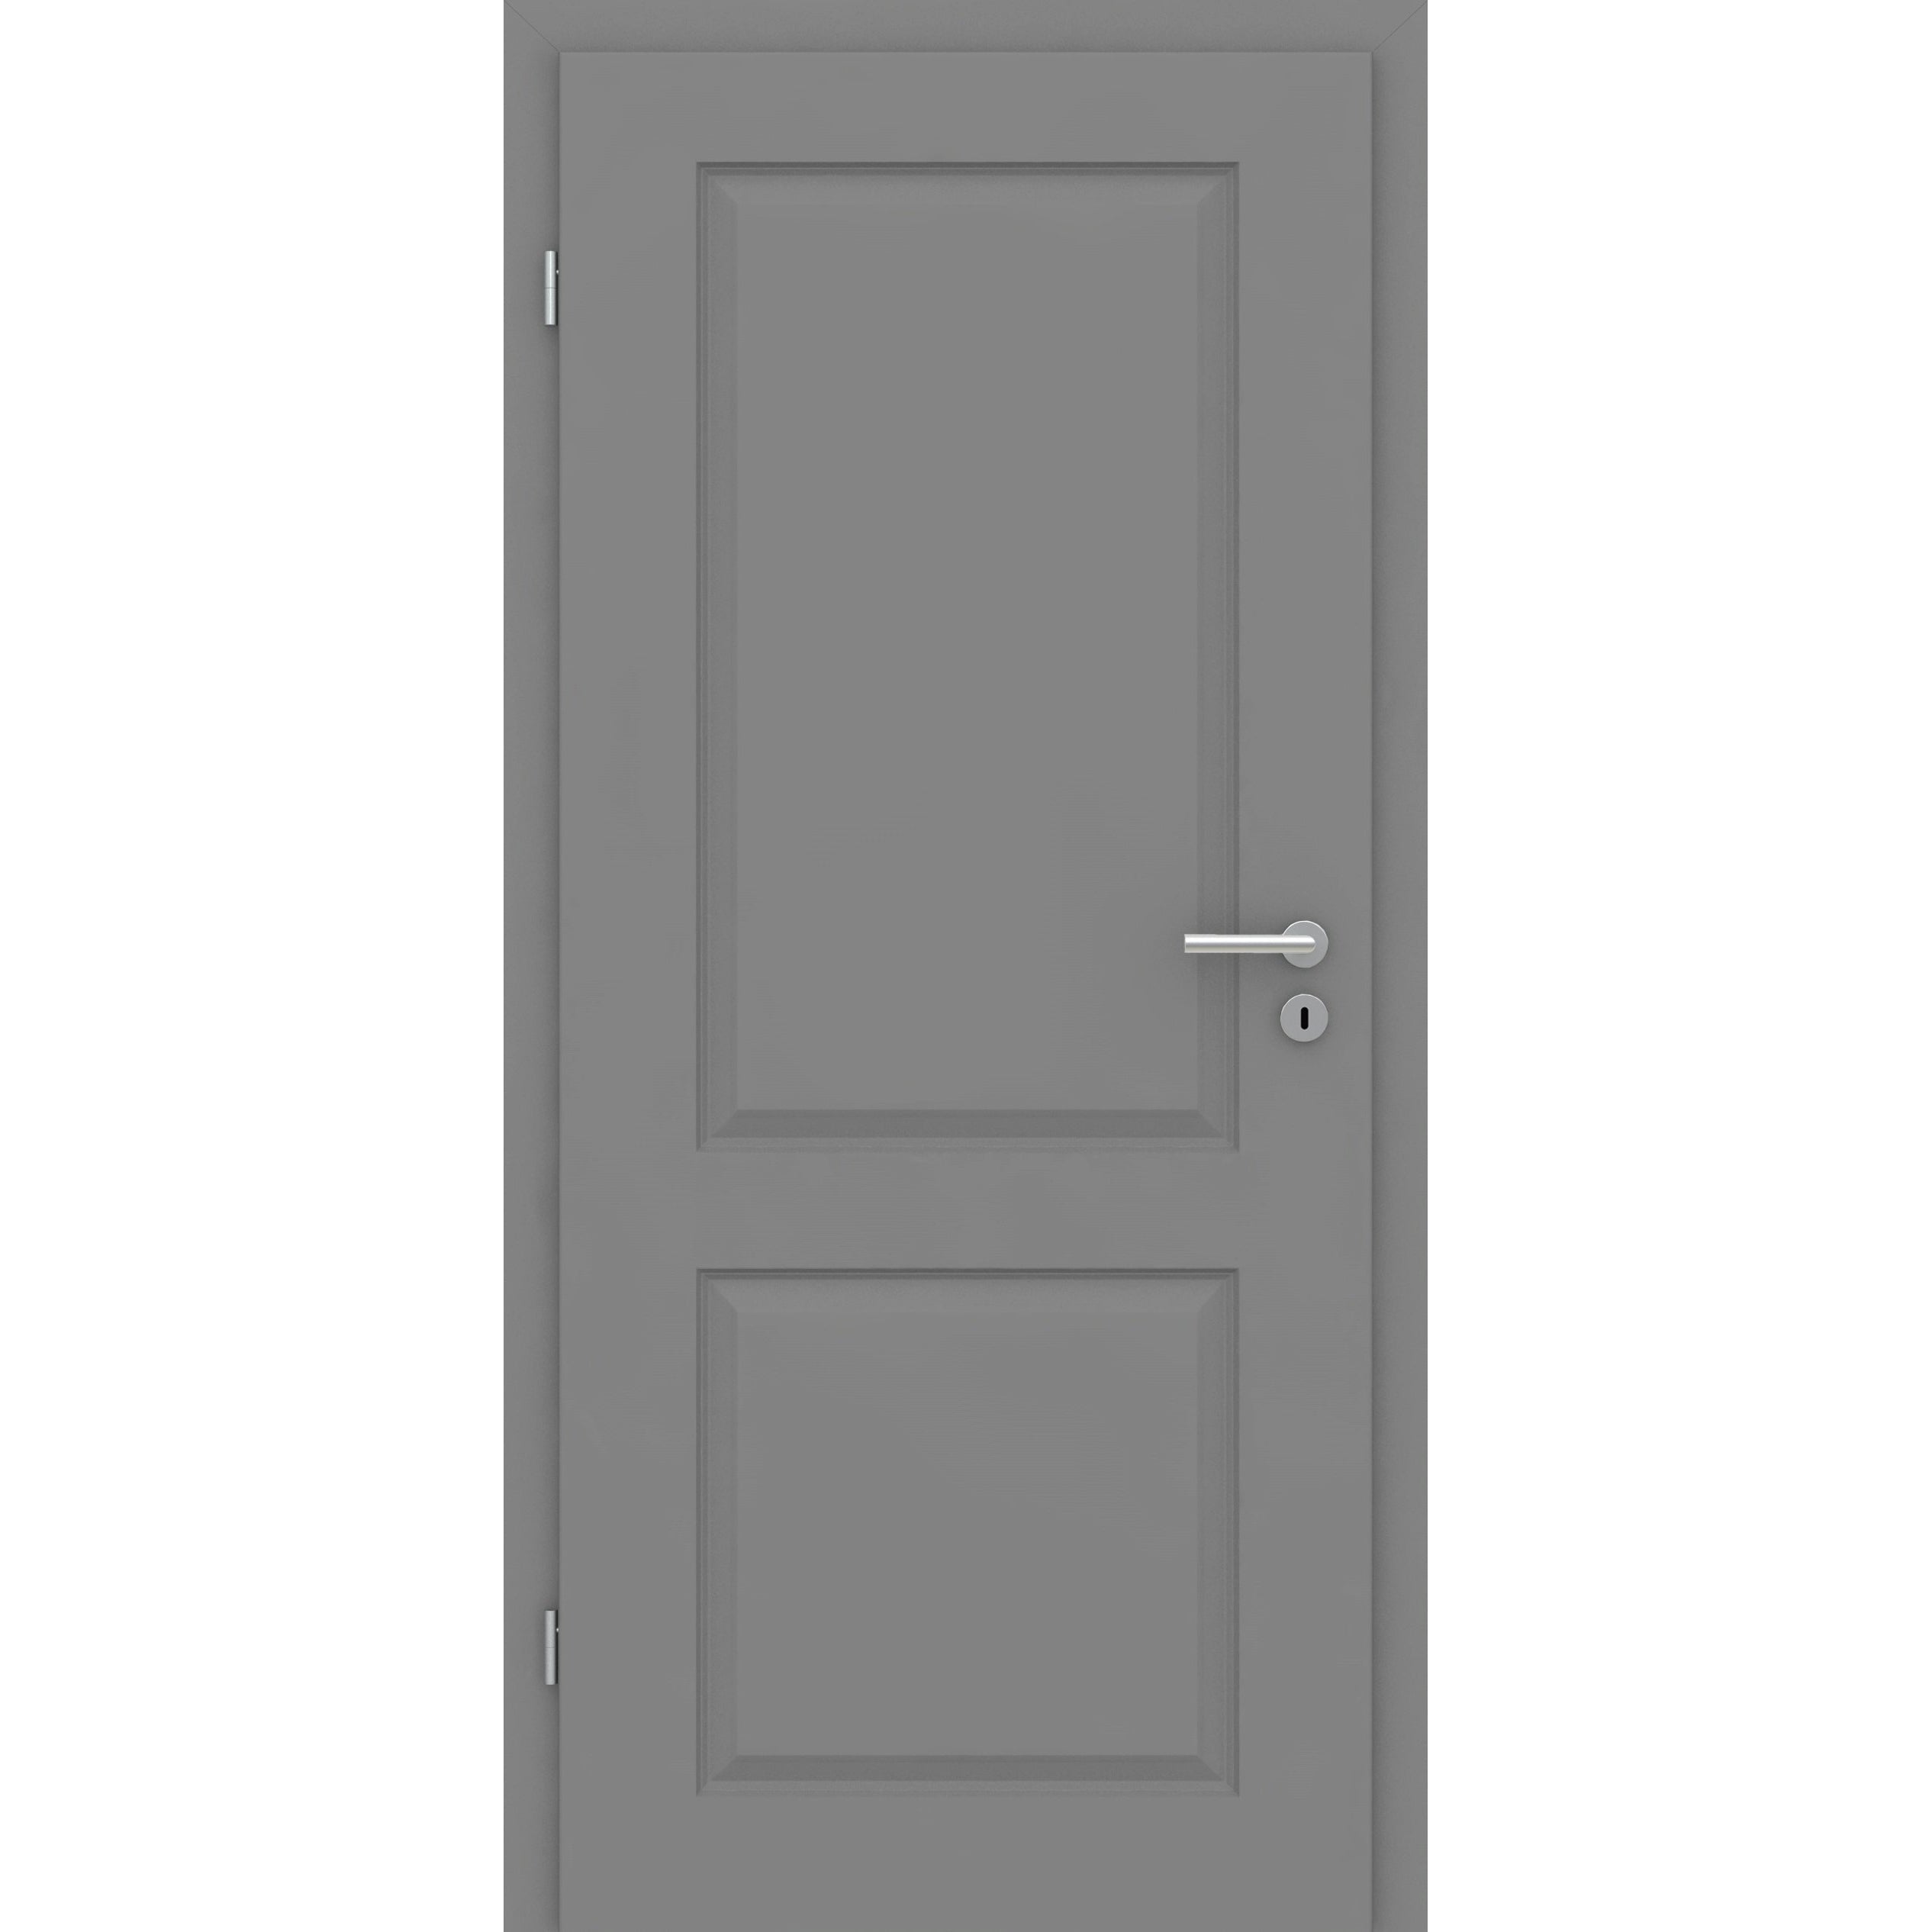 Zimmertür mit Zarge grau 2 Kassetten Designkante - Modell Stiltür K27